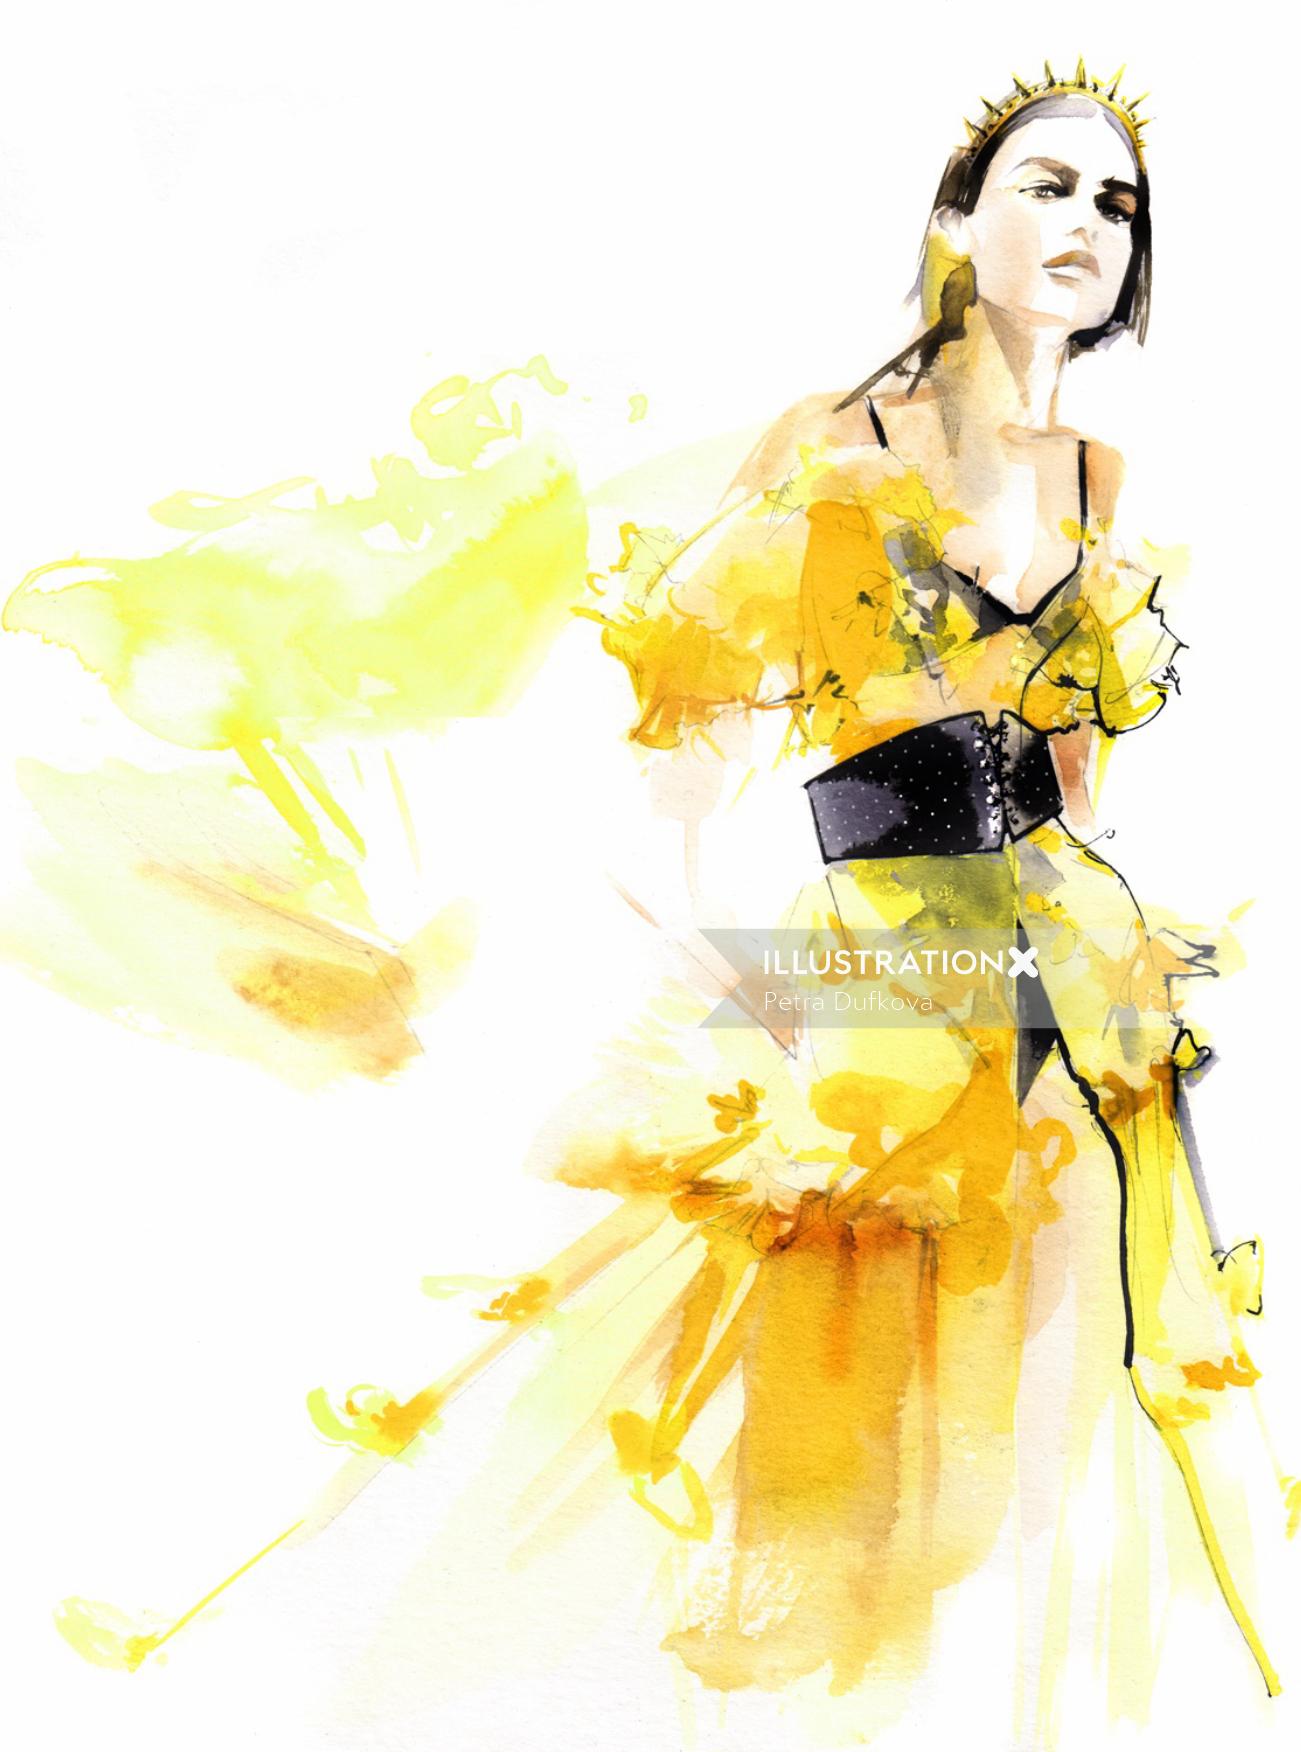 黄色のドレスを着た女性のファッションの贅沢